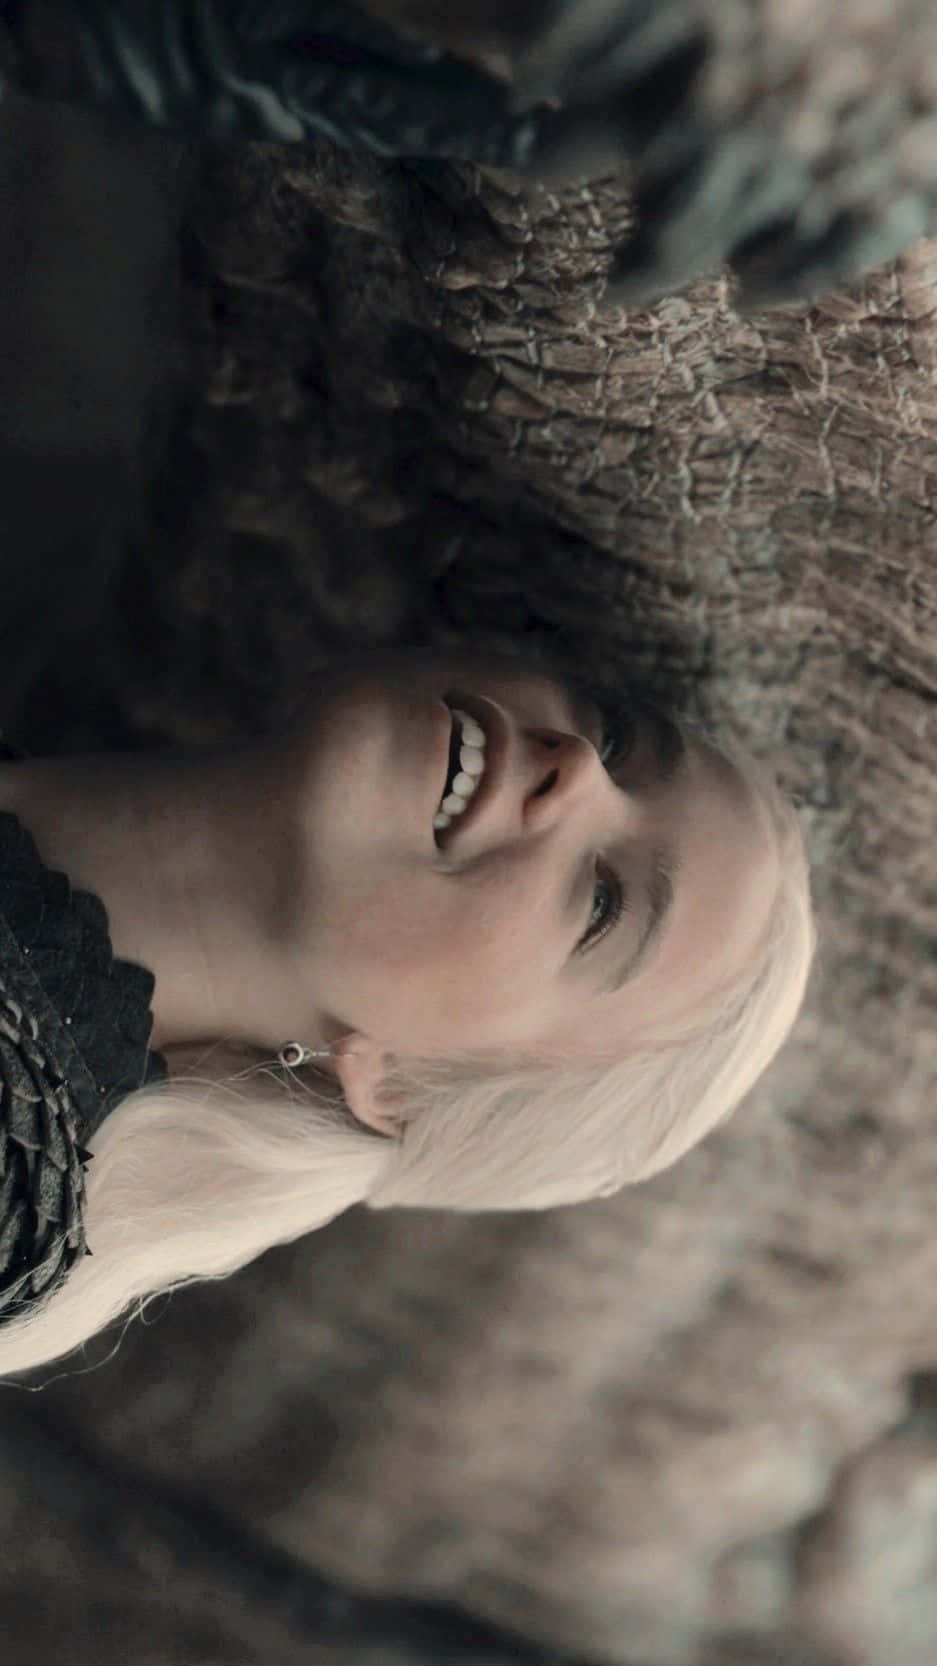 Rhaenyra Targaryen Smiling With Dragon Wallpaper